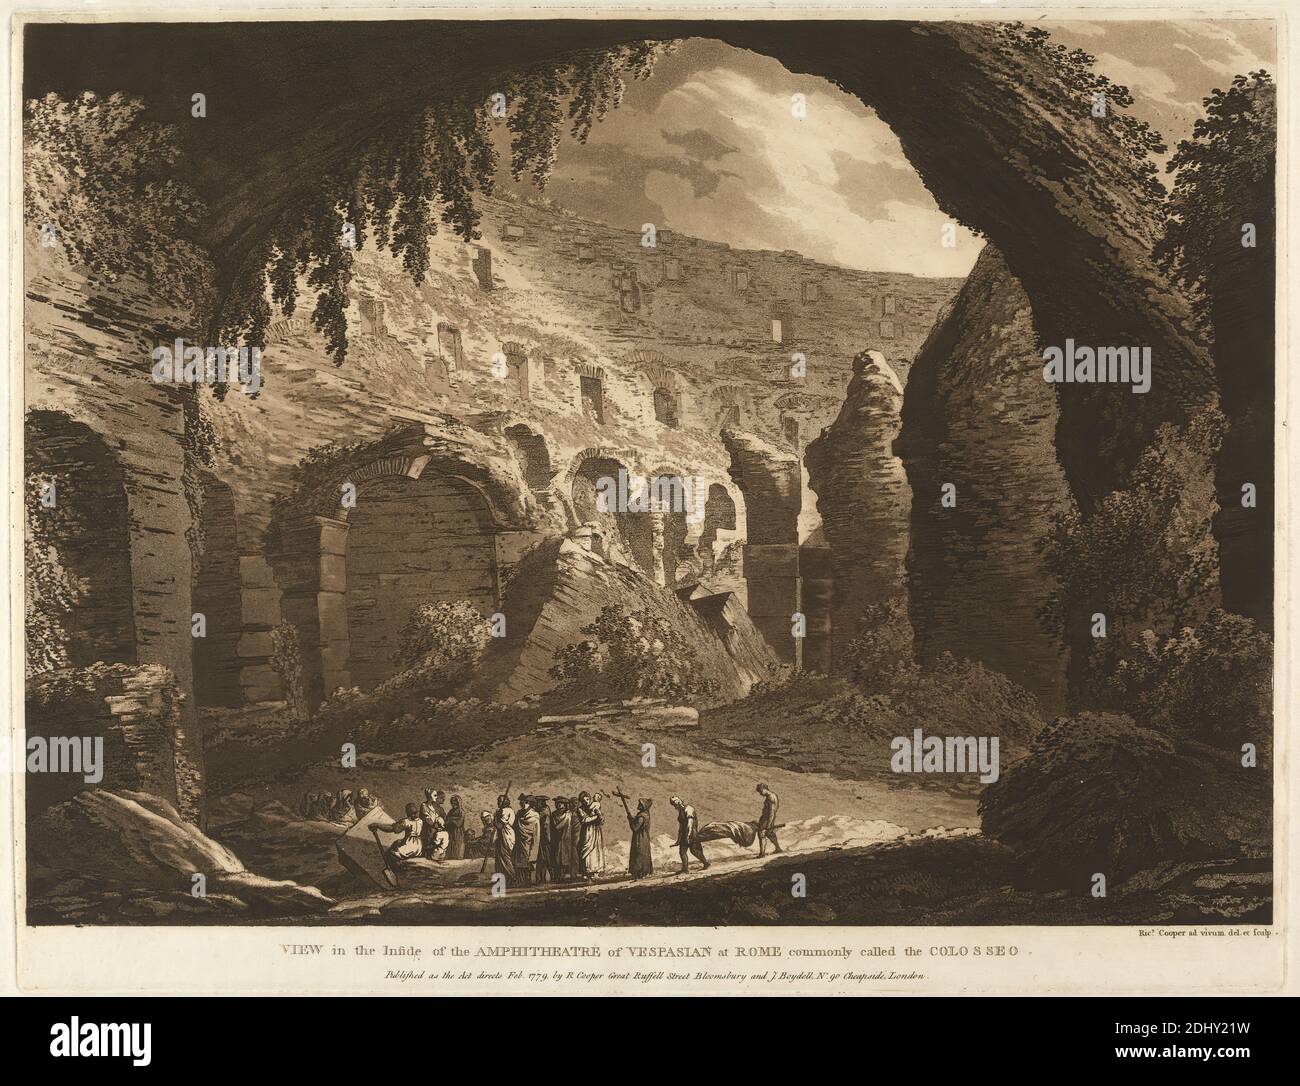 Vue à l'intérieur de l'amphithéâtre de Vespasion à Rome communément appelé le Colosseo, Richard Cooper l'ancien, 1701–1764, British, 1779, Etching et aquatinte, feuille: 14 3/8 x 19 7/8in. (36.5 x 50,5 cm), paysage, Rome Banque D'Images